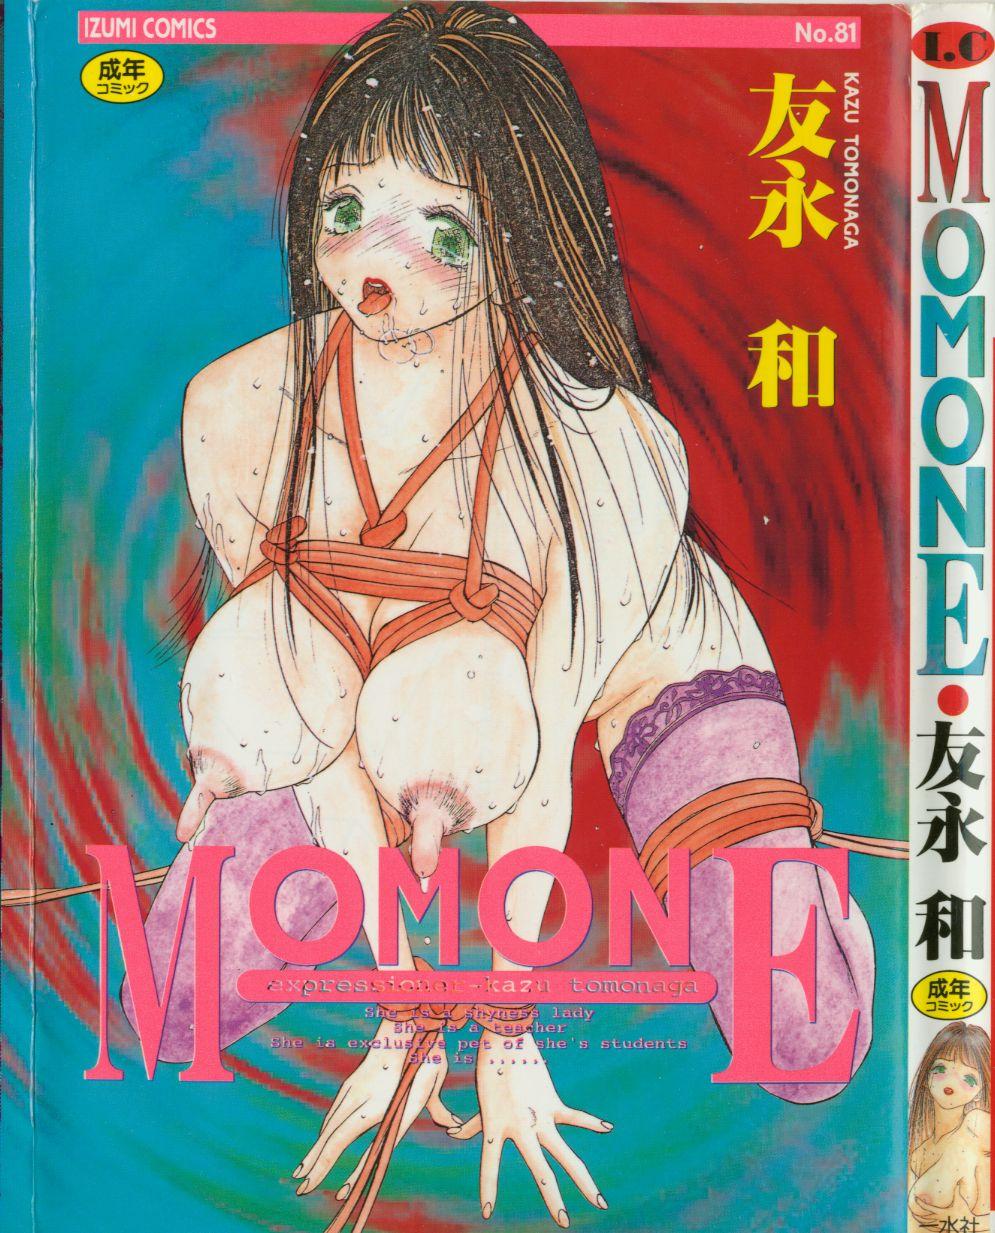 Morocha MOMONE 1 Blowjob Porn - Picture 1